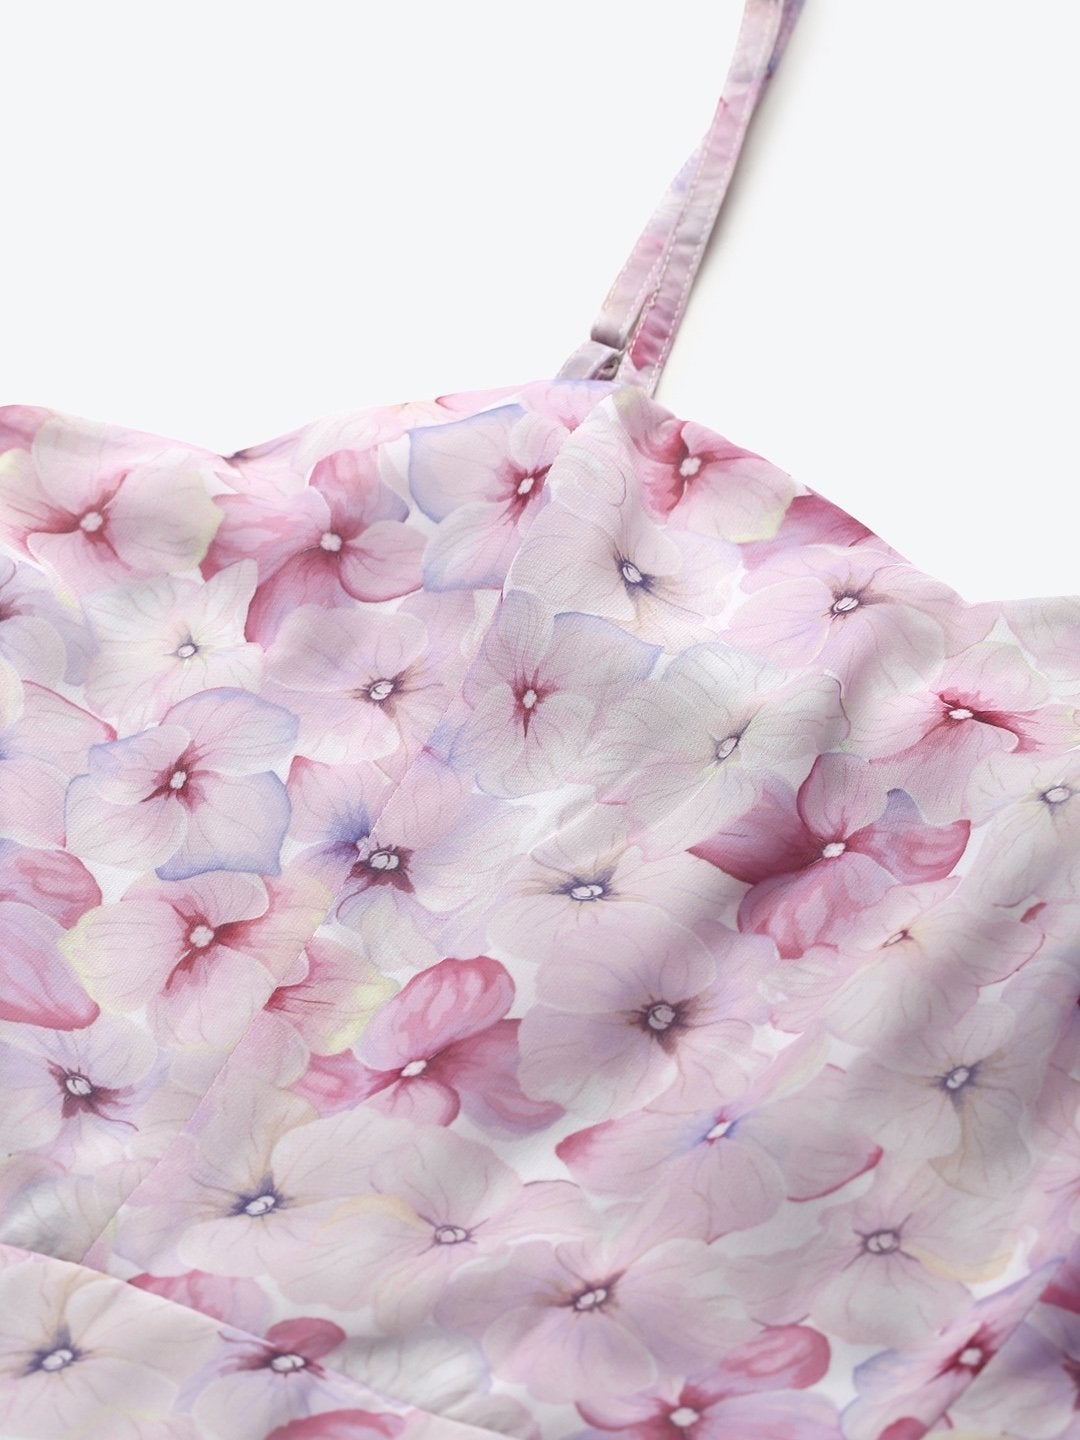 Women's Pink Floral Strappy Midi Dress - SASSAFRAS